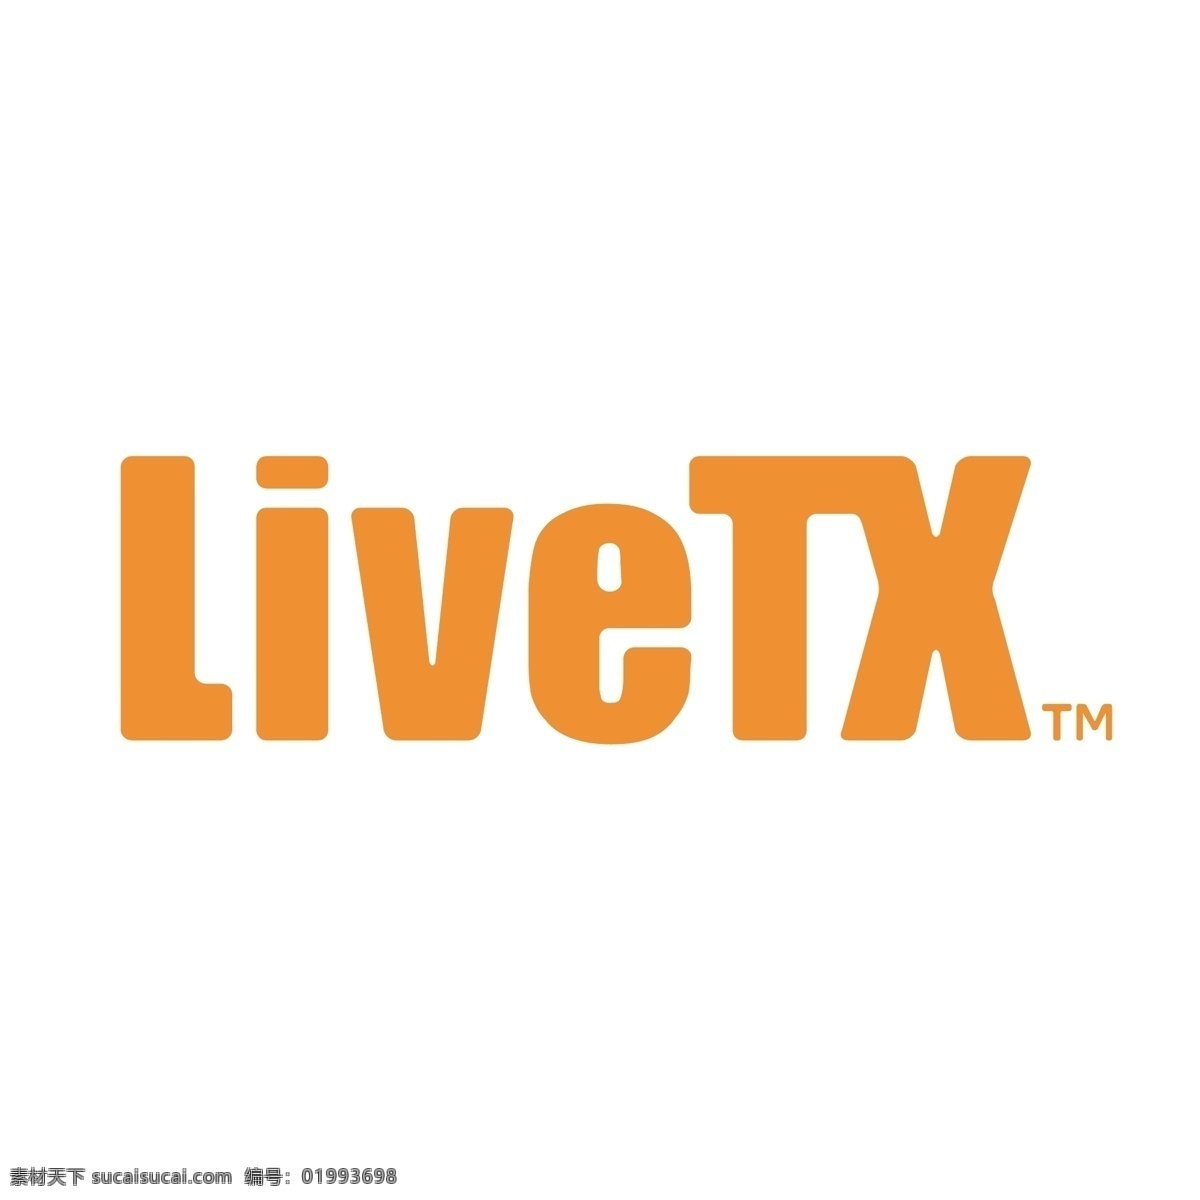 livetx 矢量标志下载 免费矢量标识 商标 品牌标识 标识 矢量 免费 品牌 公司 白色